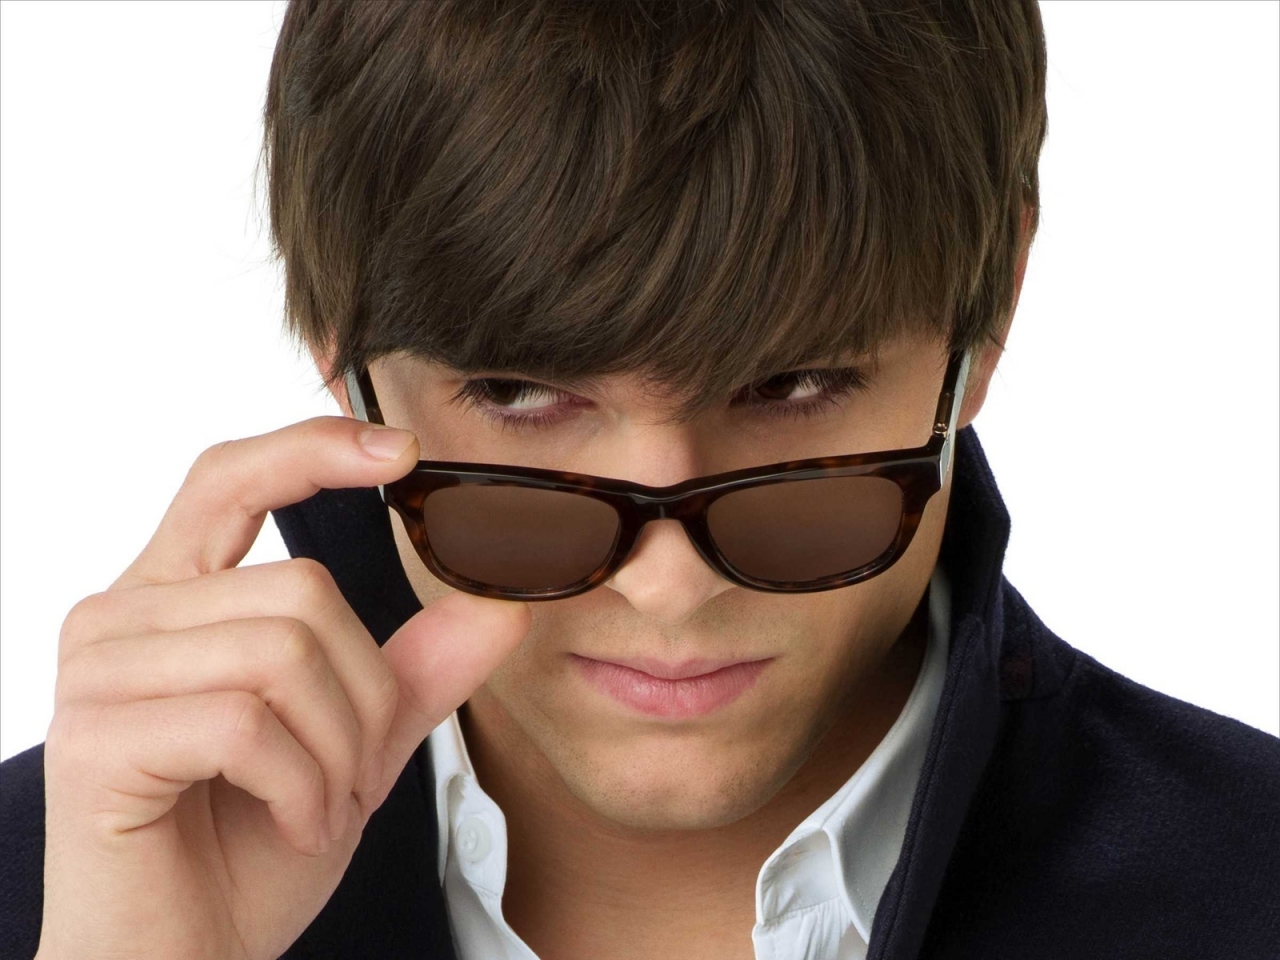 Ashton Kutcher with Sunglasses for 1280 x 960 resolution